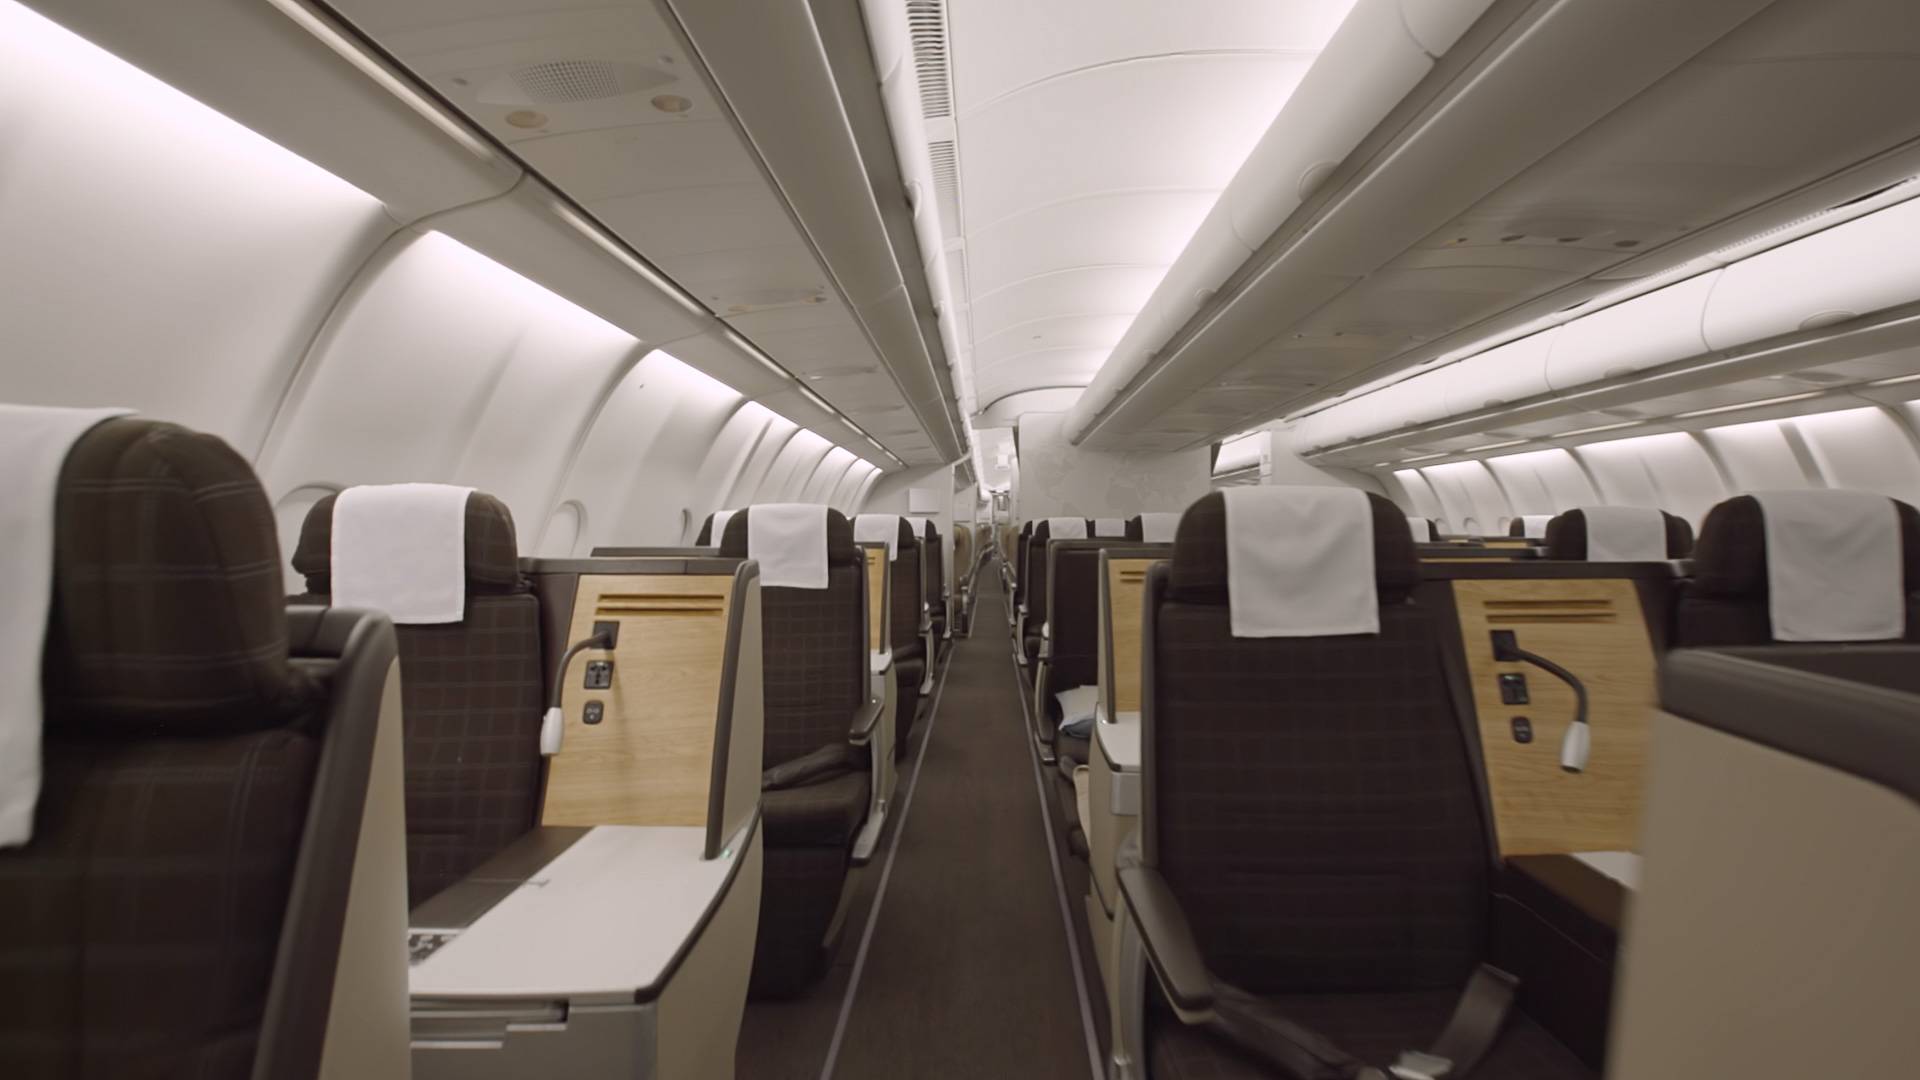 Swiss Air business class cabin